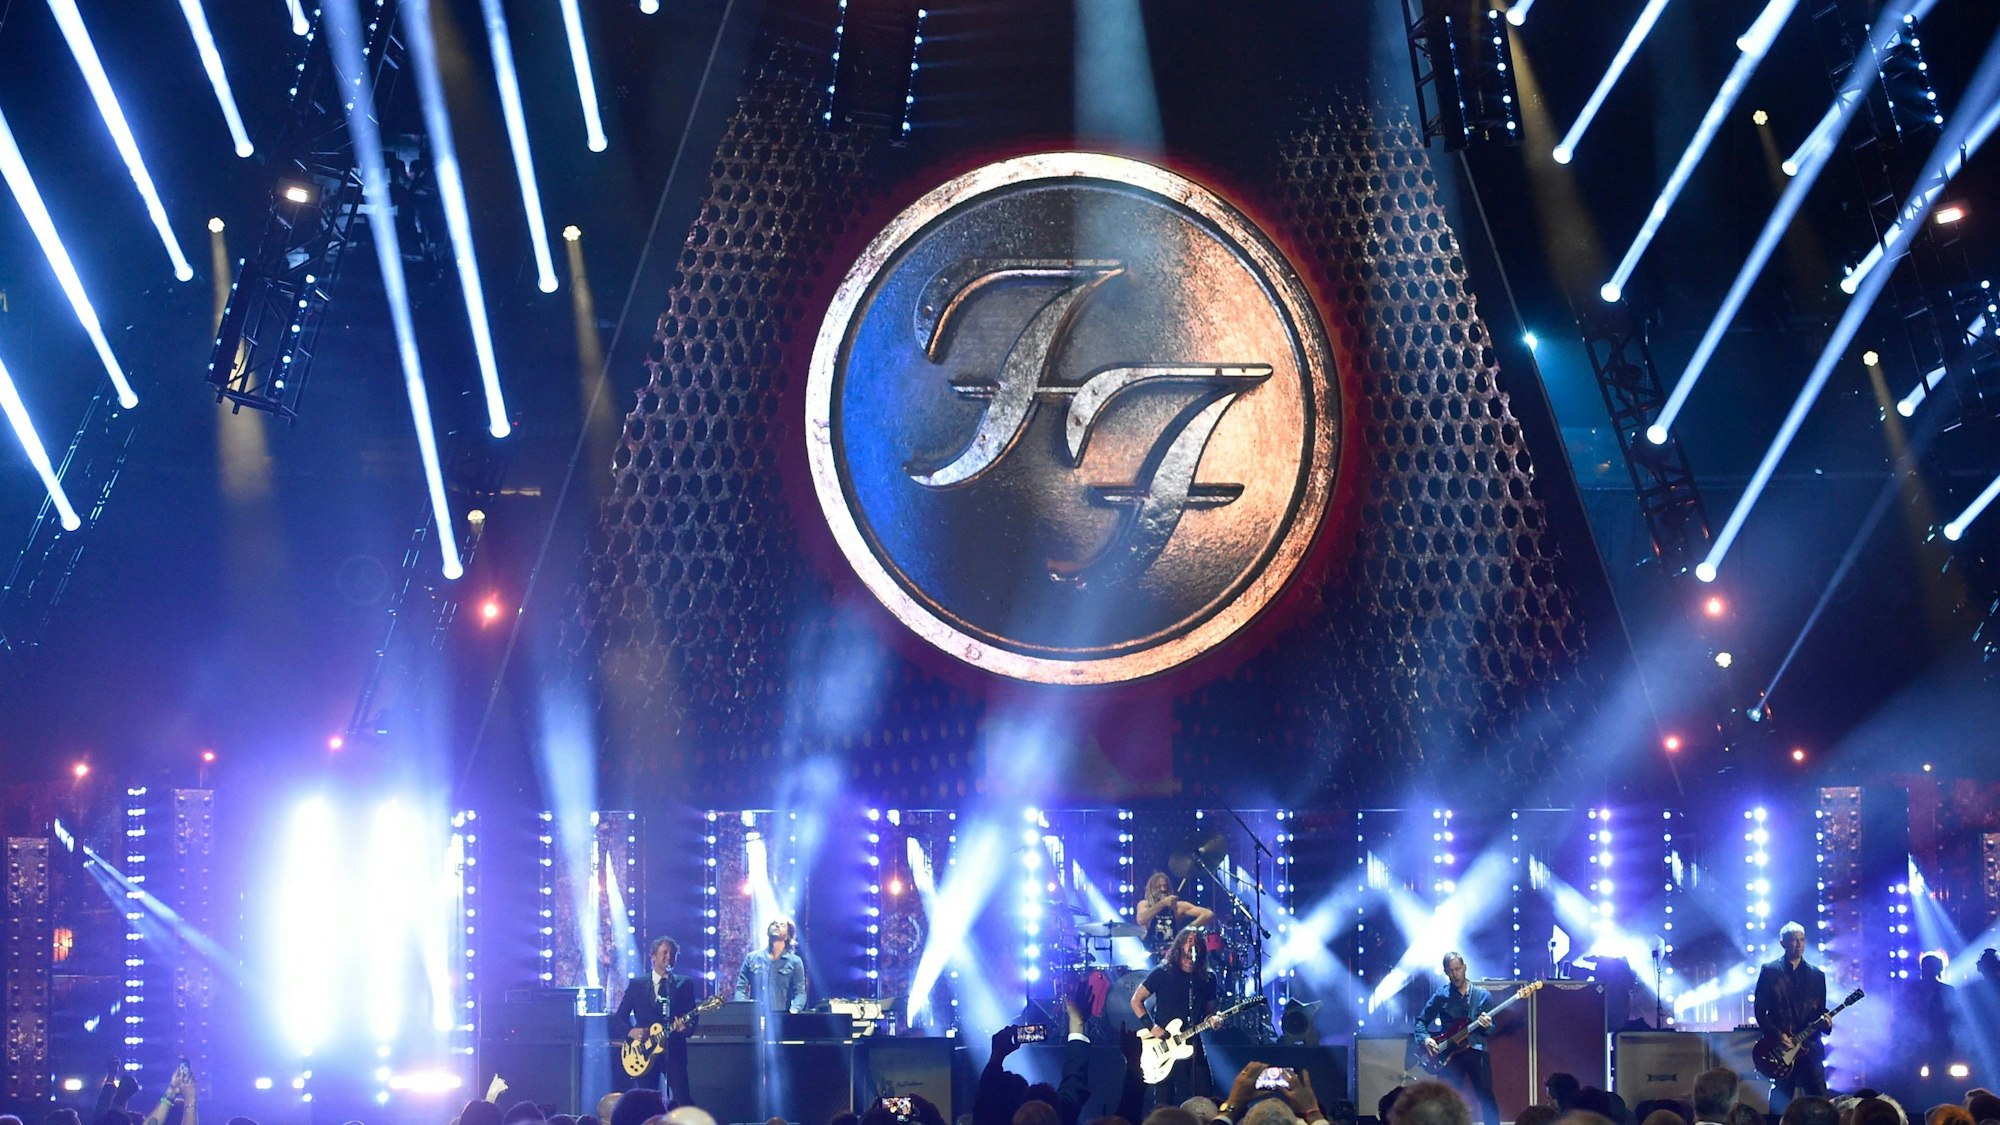 Die Foo Fighters performen auf einer Bühne der Rock & Roll Hall of Fame Zeremonie in Cleveland (USA).